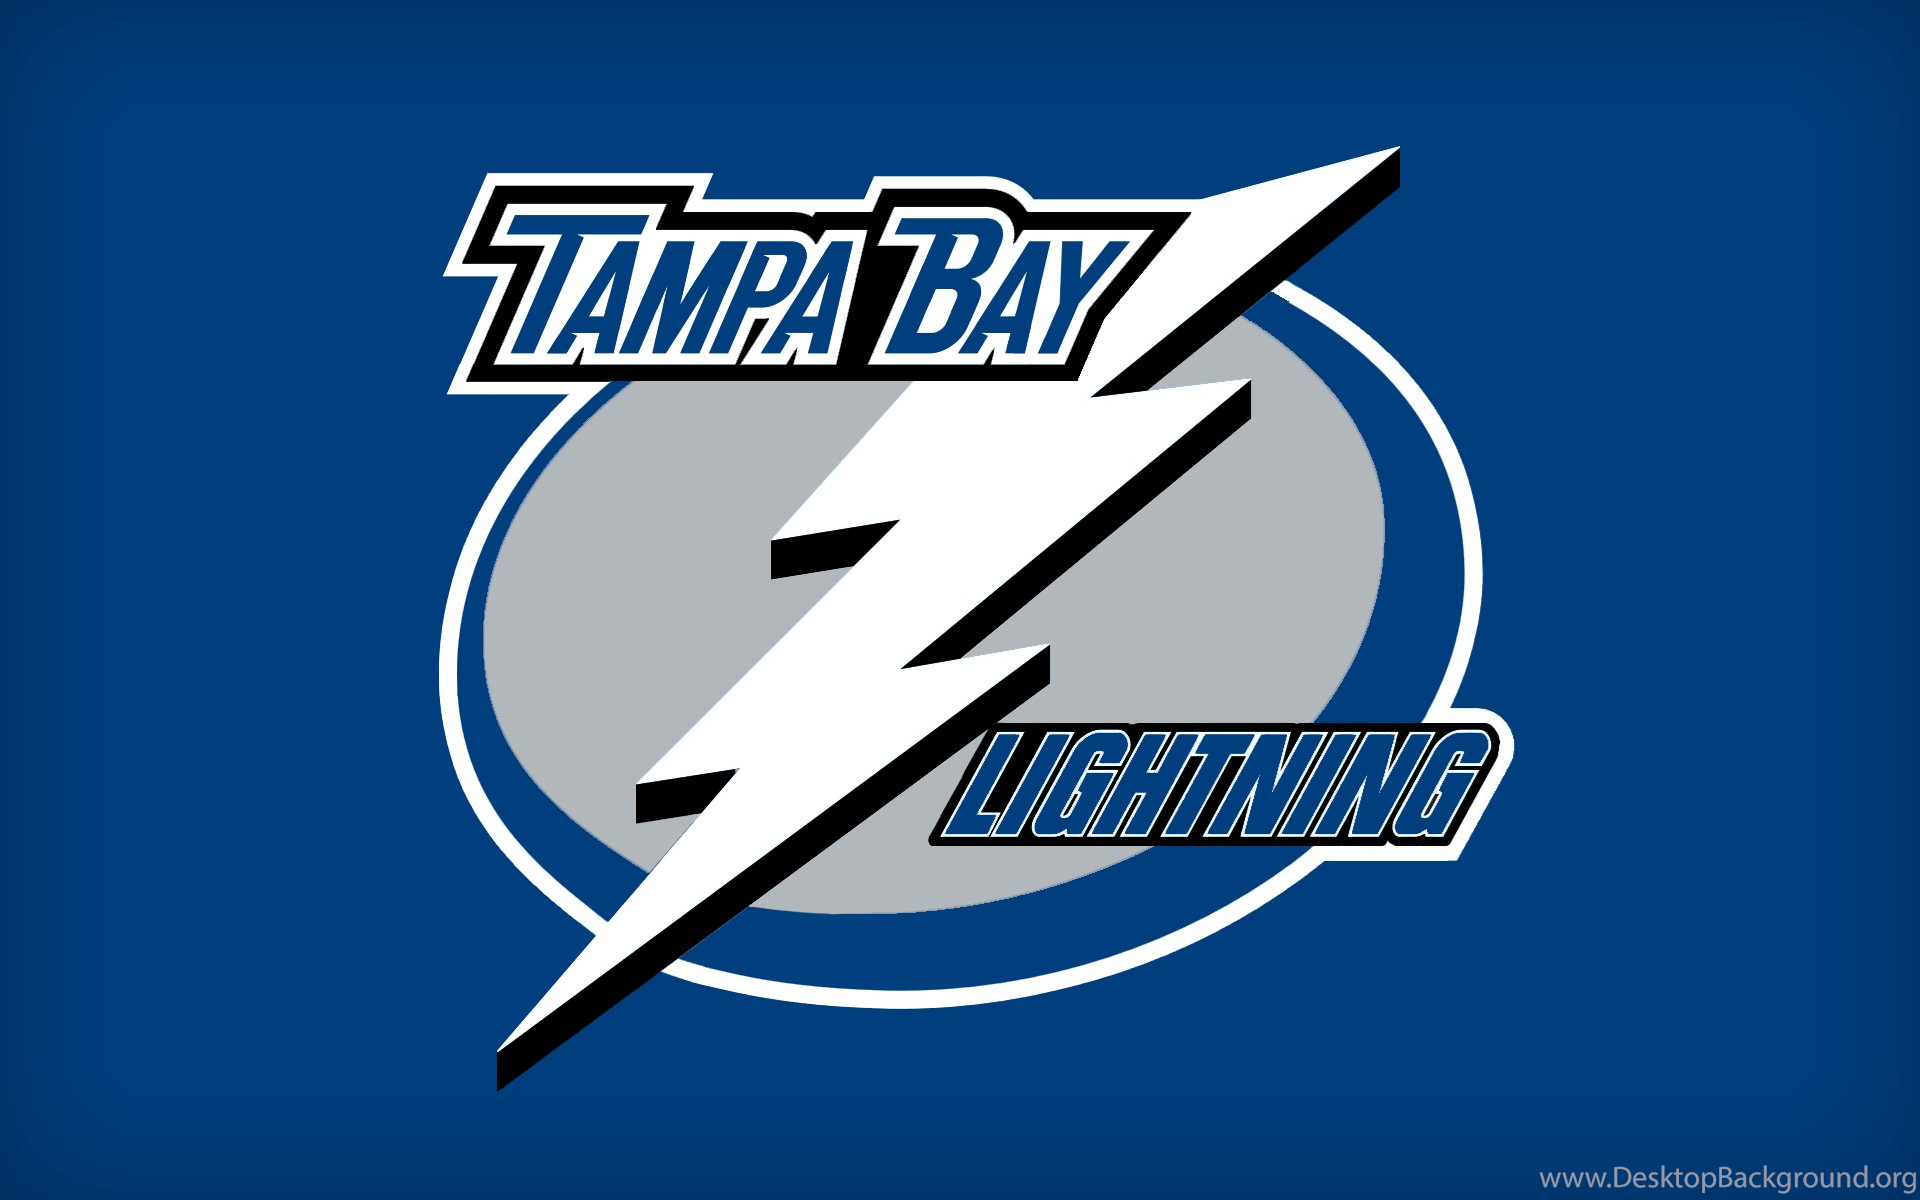 download free 20 tampa bay lightning